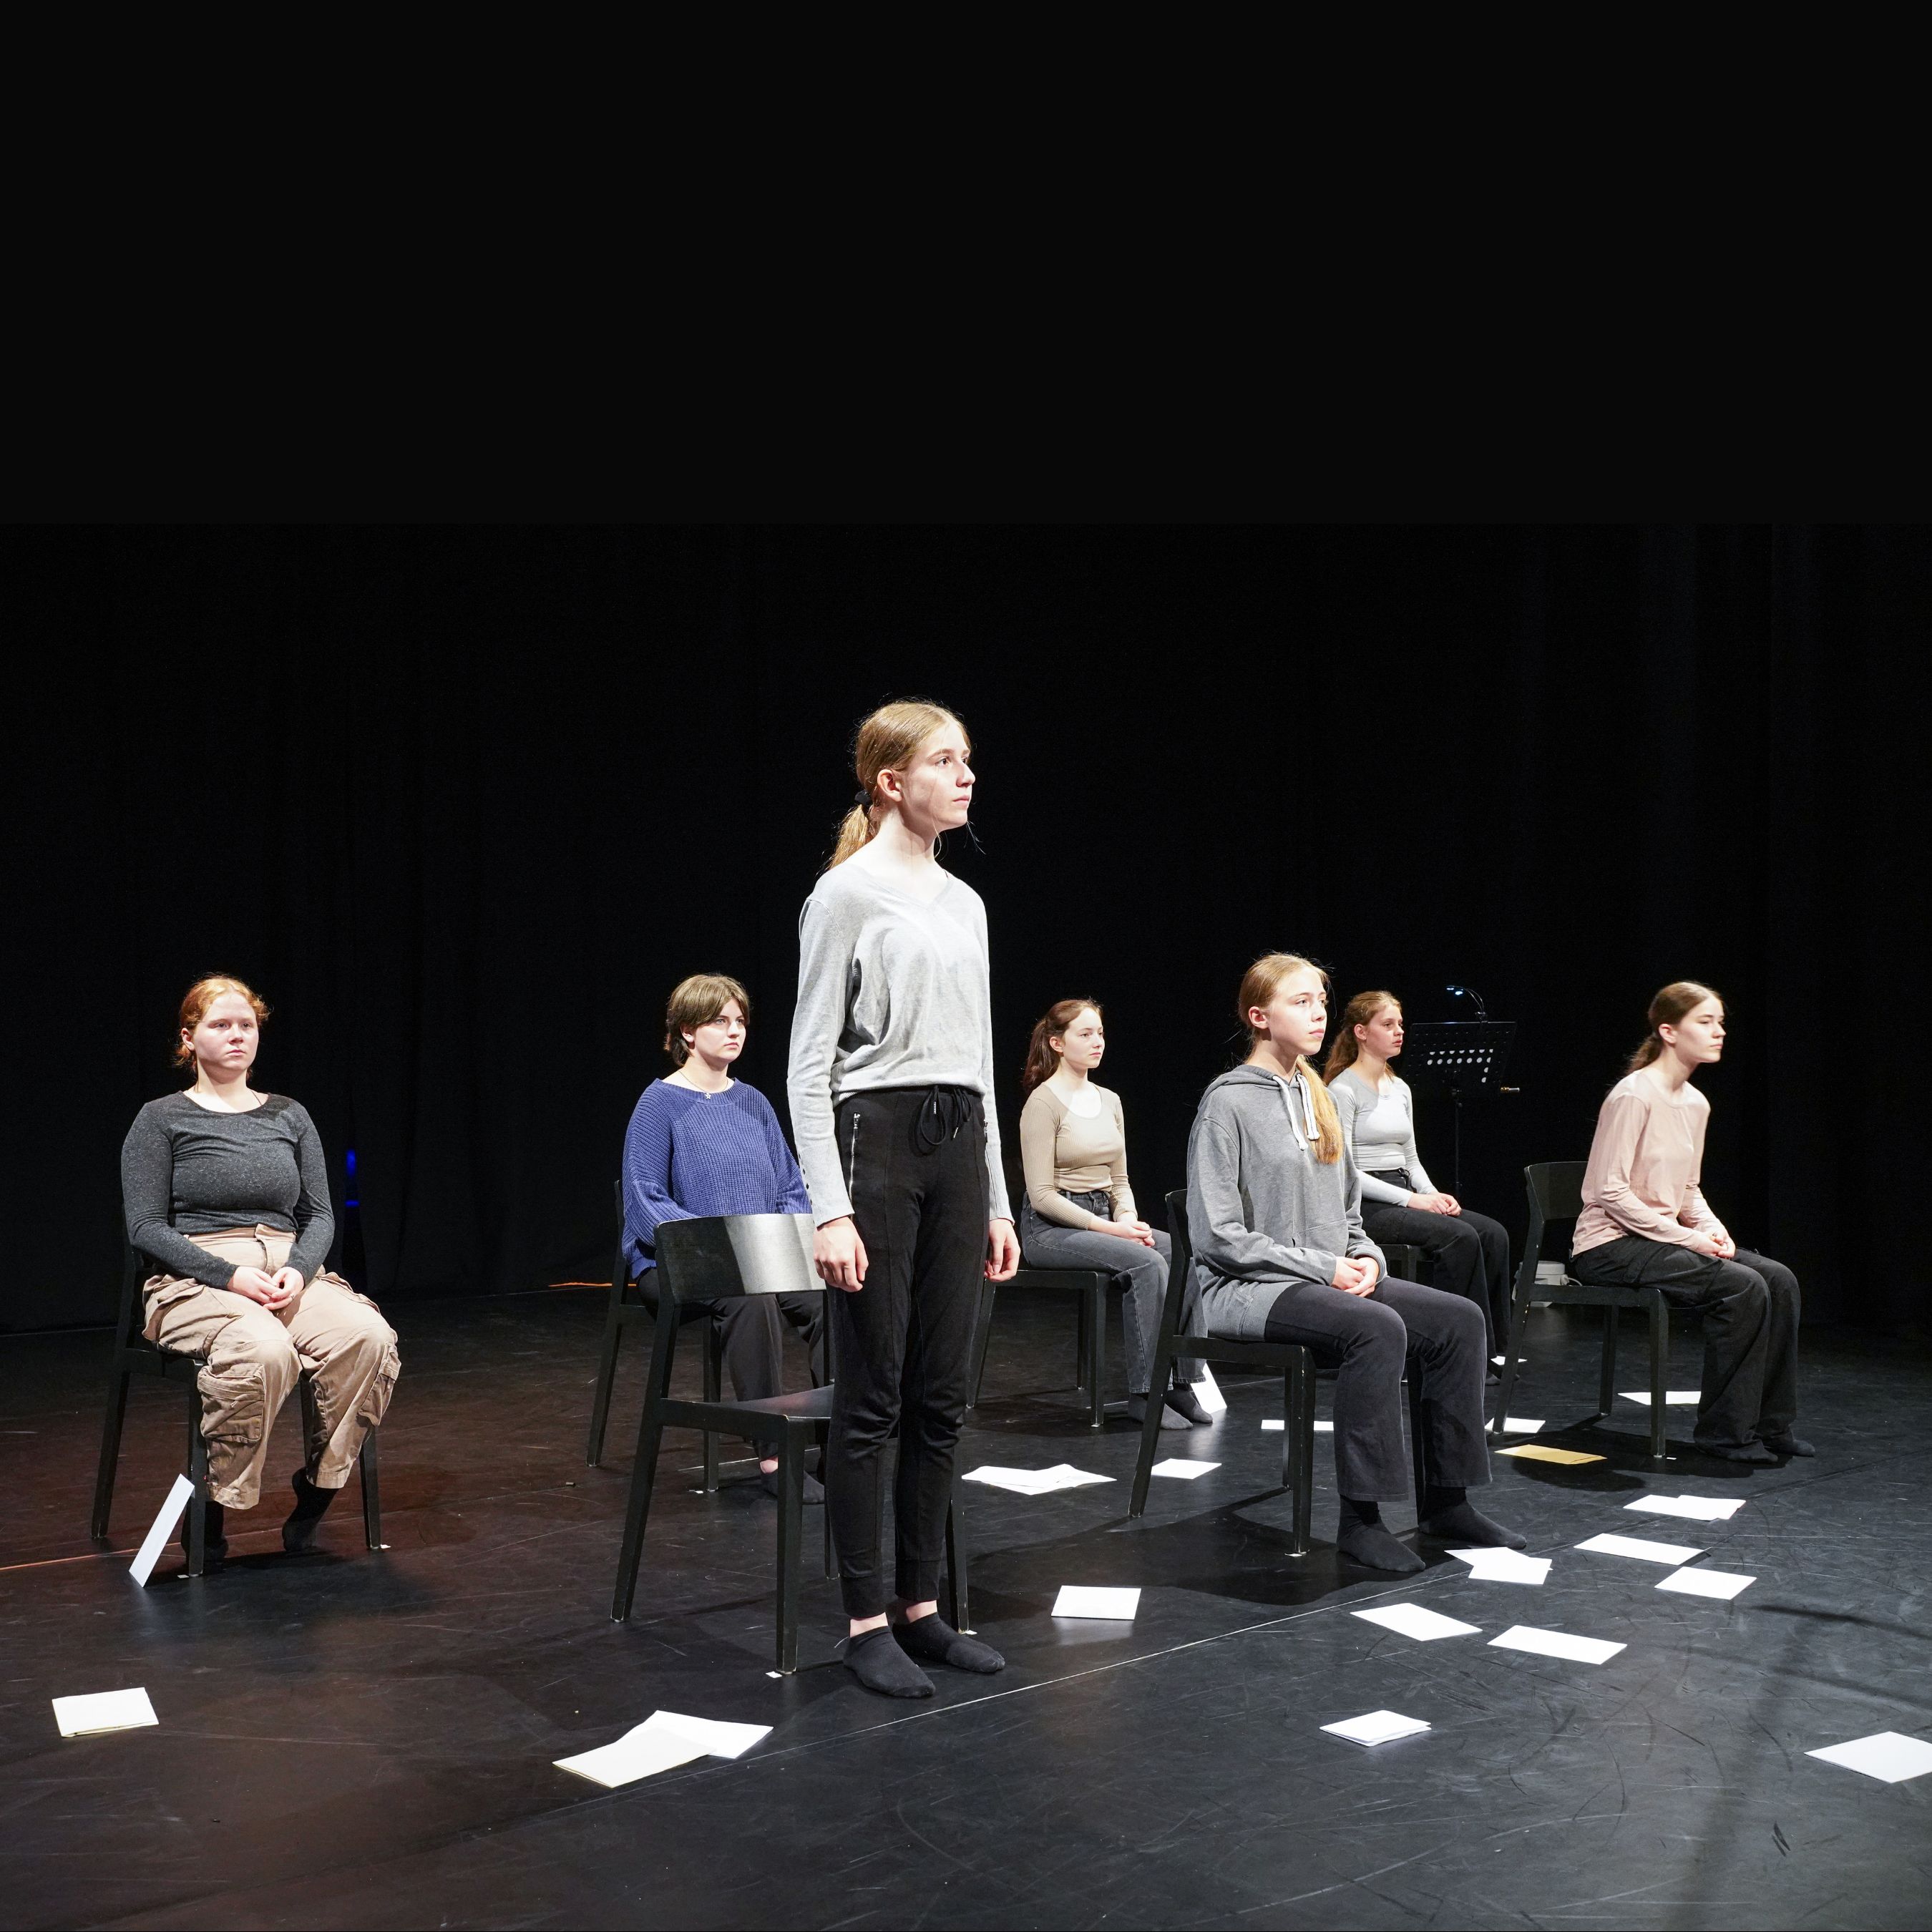 Bühnenbild mit sieben schwarzen Stühlen in zwei Reihen. Eine Frau steht. Die anderen sechs Frauen sitzen.